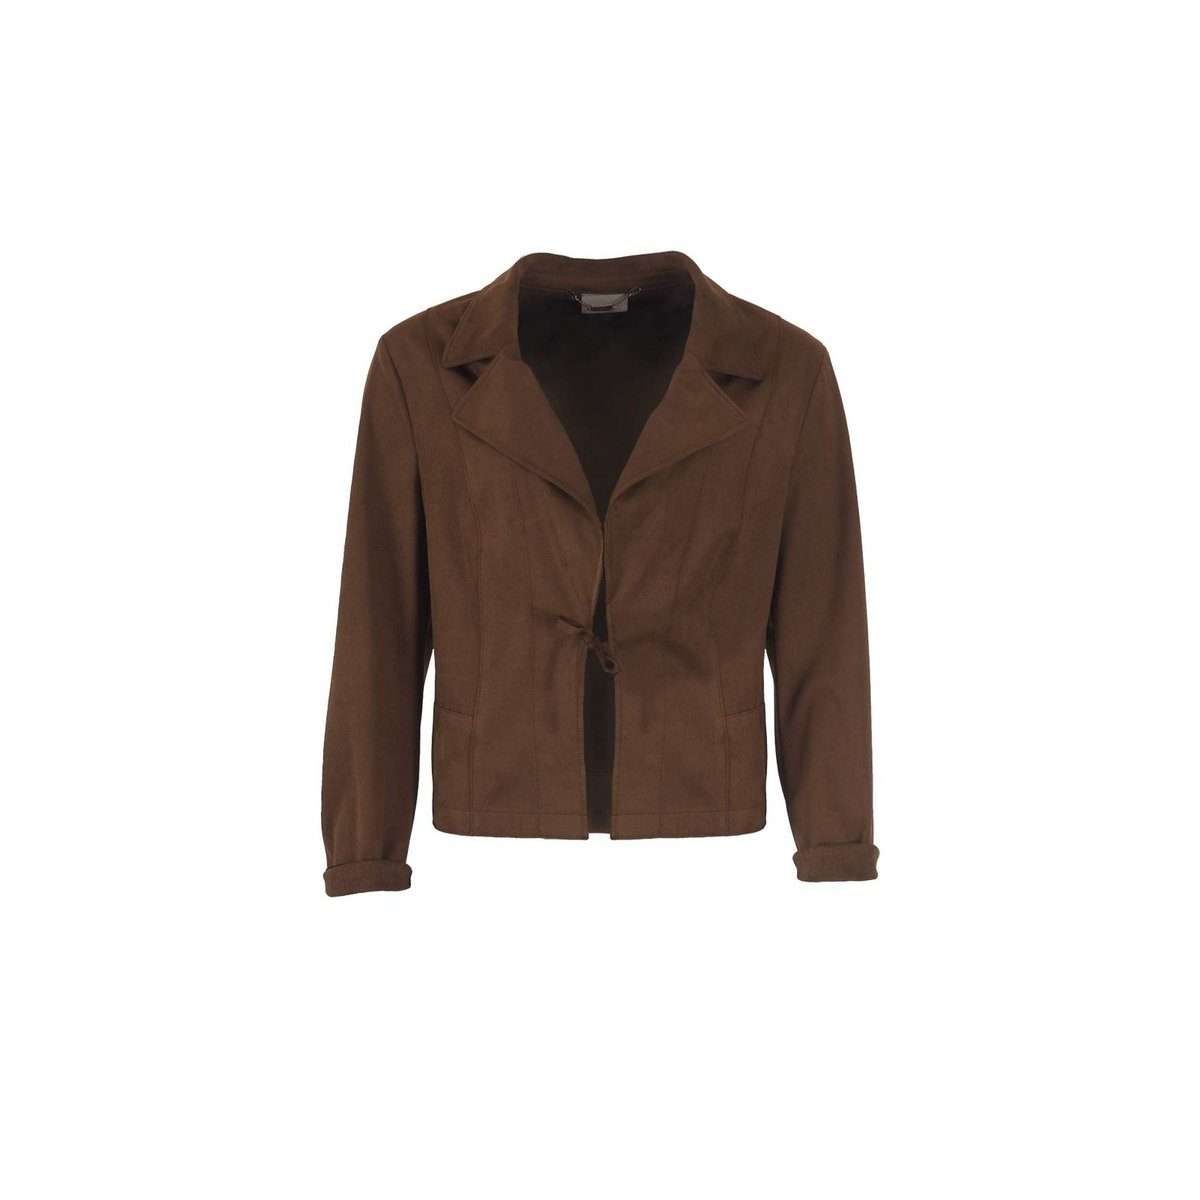 Функциональная куртка 3-в-1 темно-коричневого цвета (1 шт.)